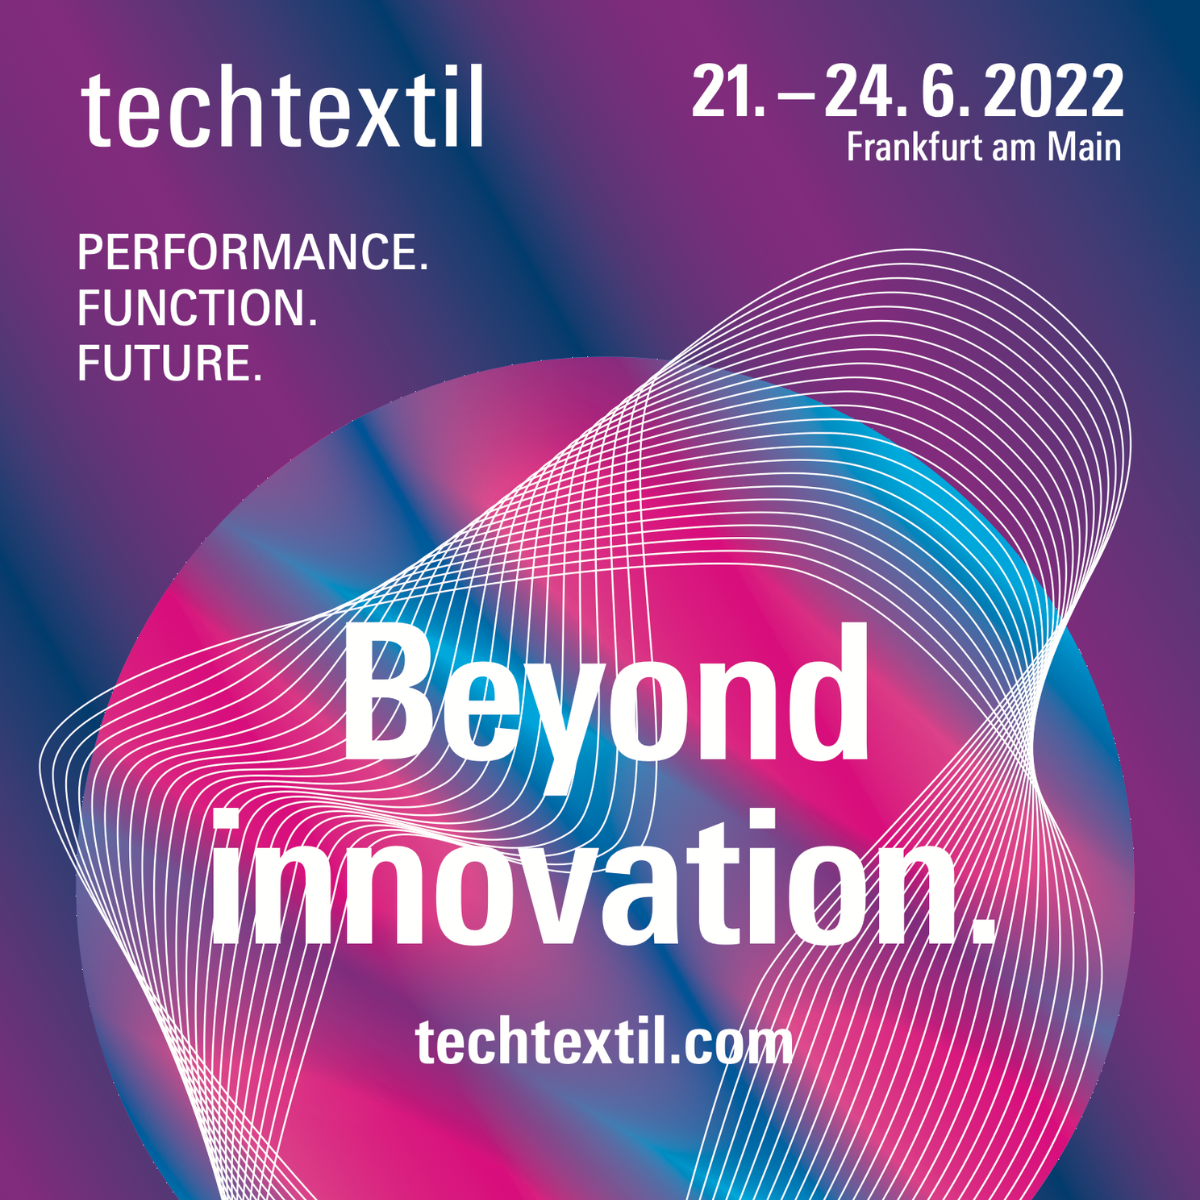 See you in Frankfurt for Techtextil